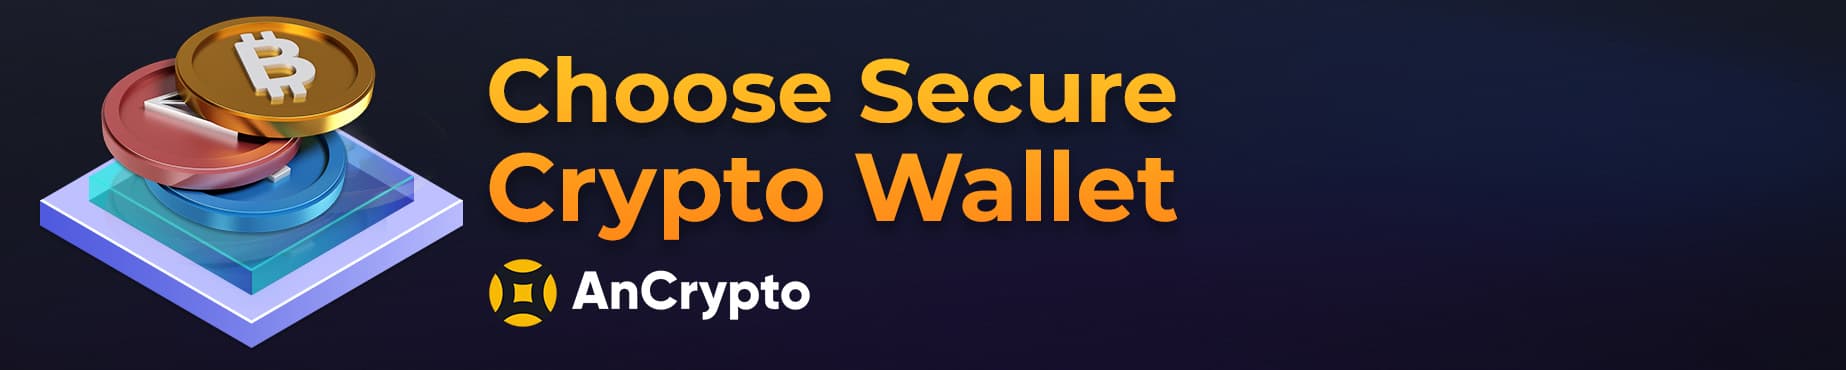 choose secure crypto wallet AnCrypto cta button